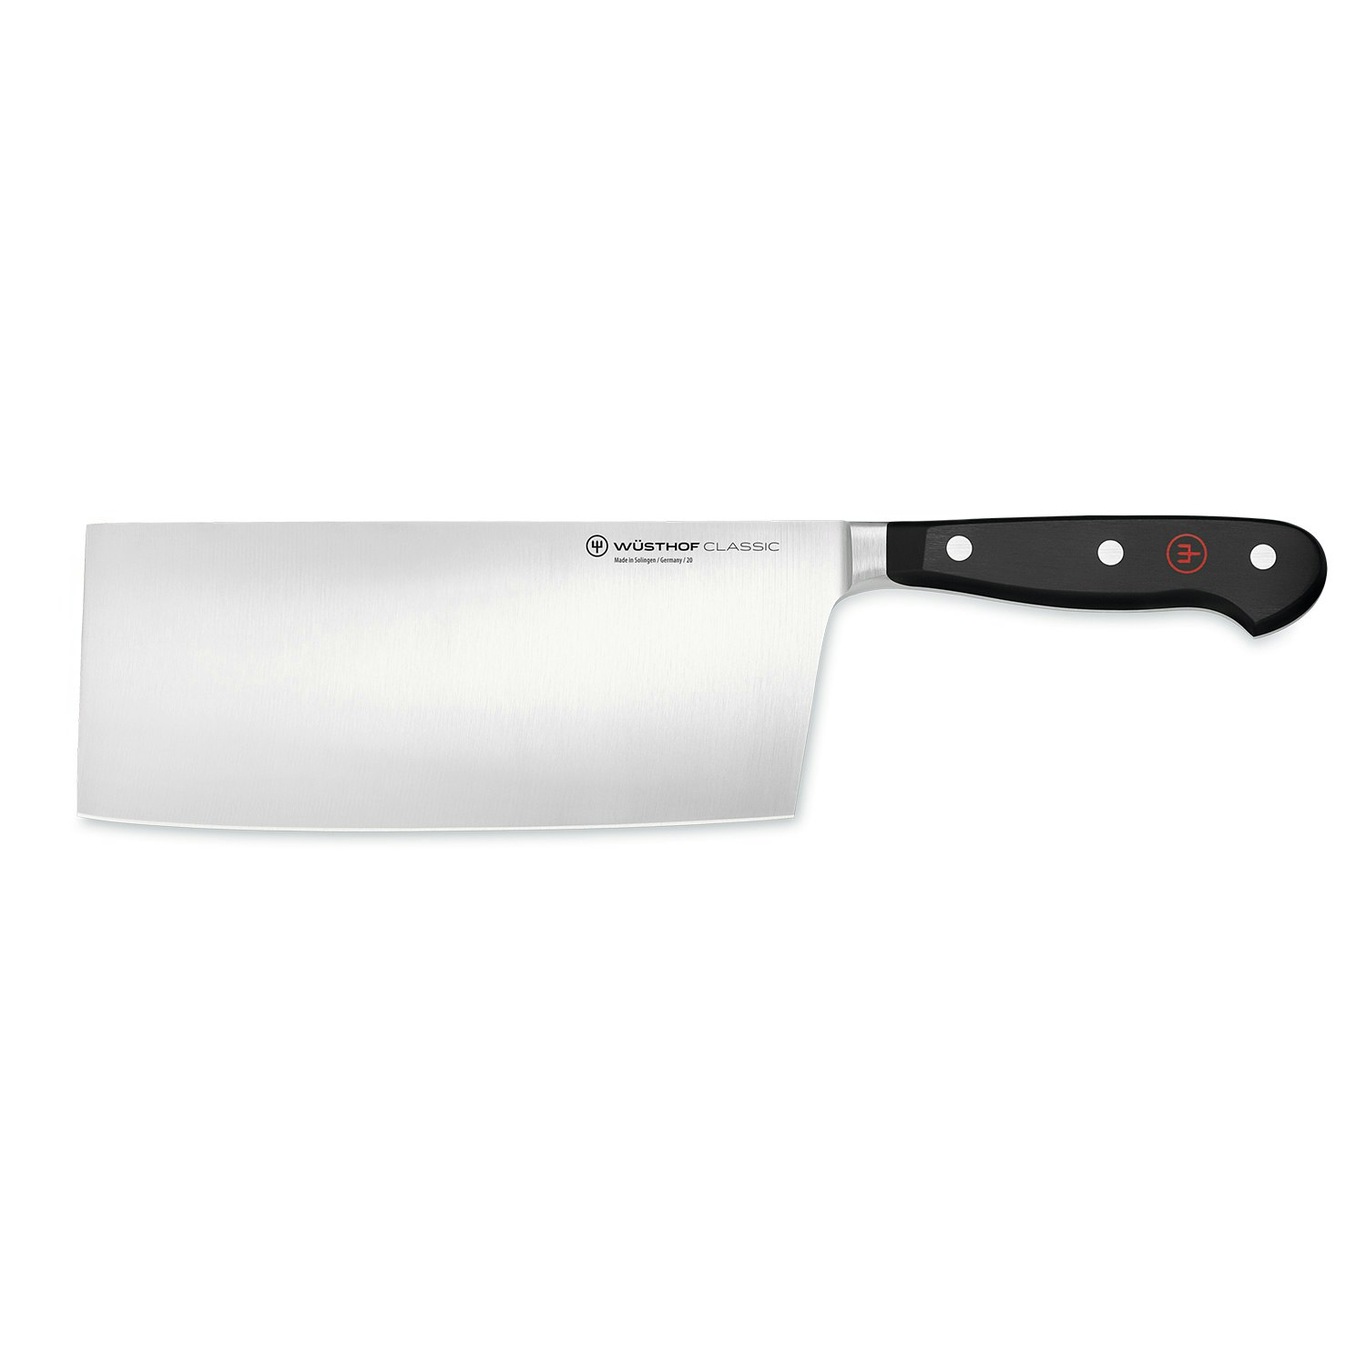 https://royaldesign.com/image/11/wusthof-classic-chinese-chef-knife-18-cm-0?w=800&quality=80